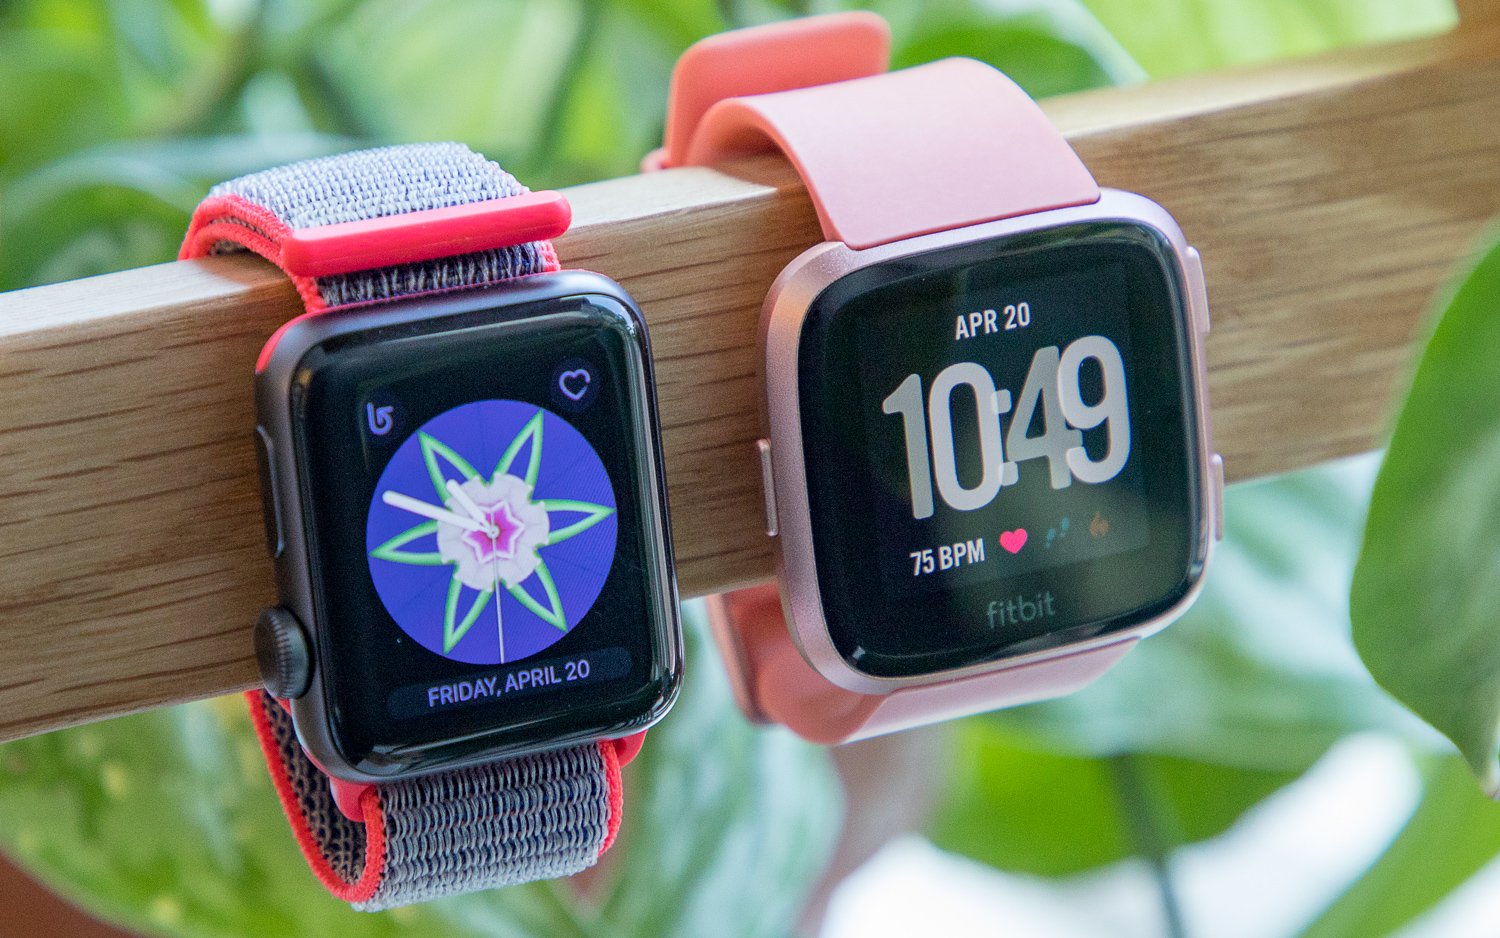 apple-watch-vs-fitbit